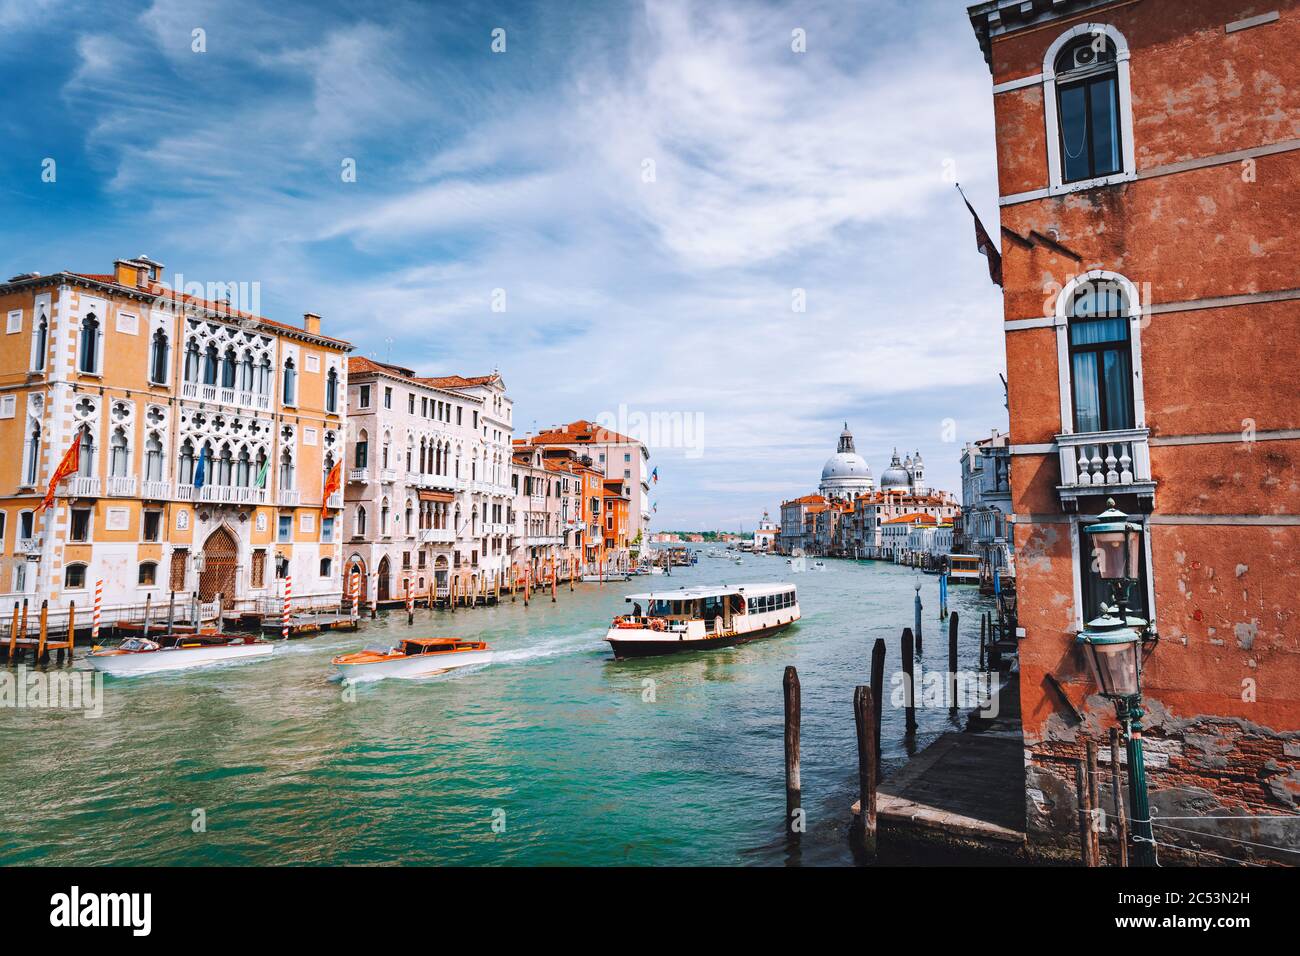 Grand Canal. Basilica Santa Maria della Salute in background, Venice, Italy. Stock Photo